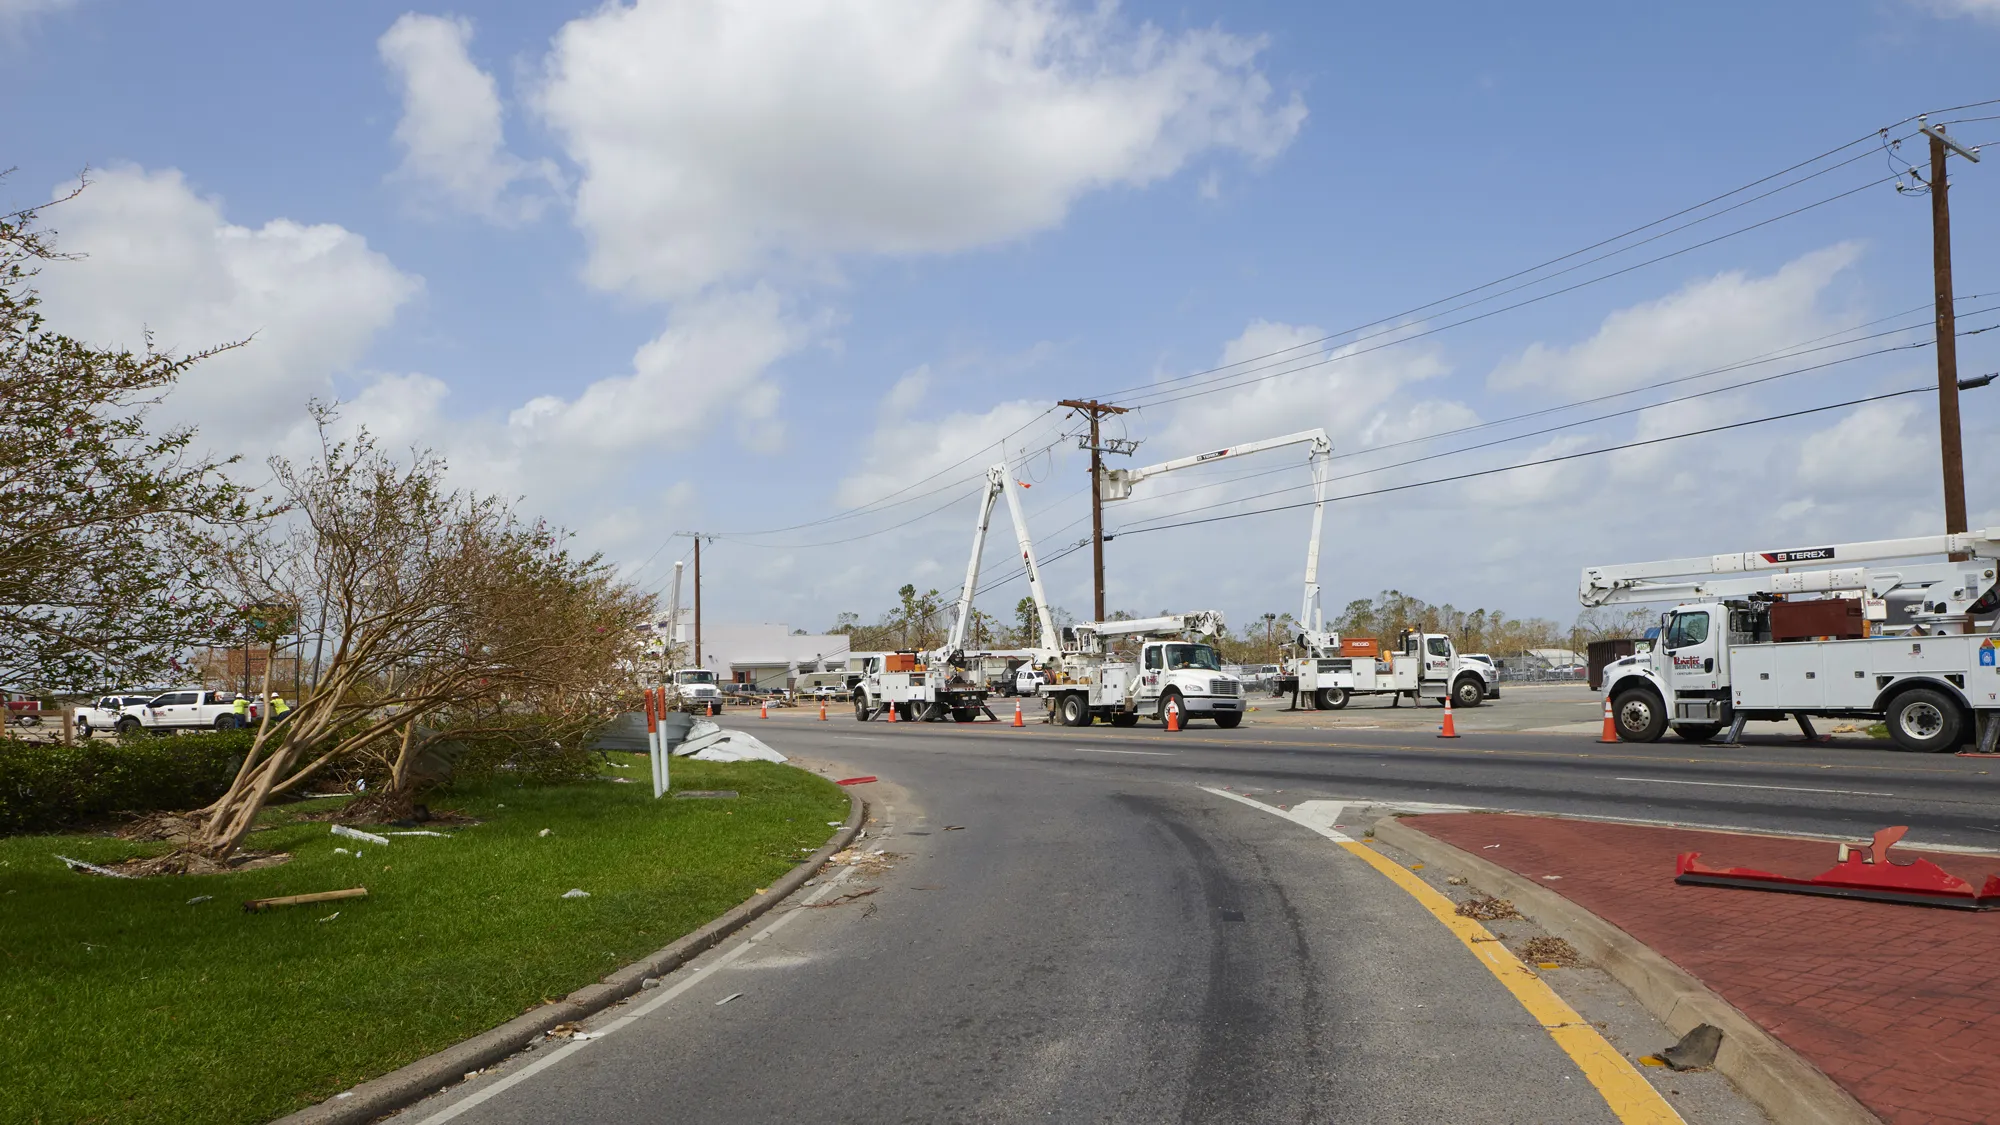 Linetec trucks fix power lines after a storm.